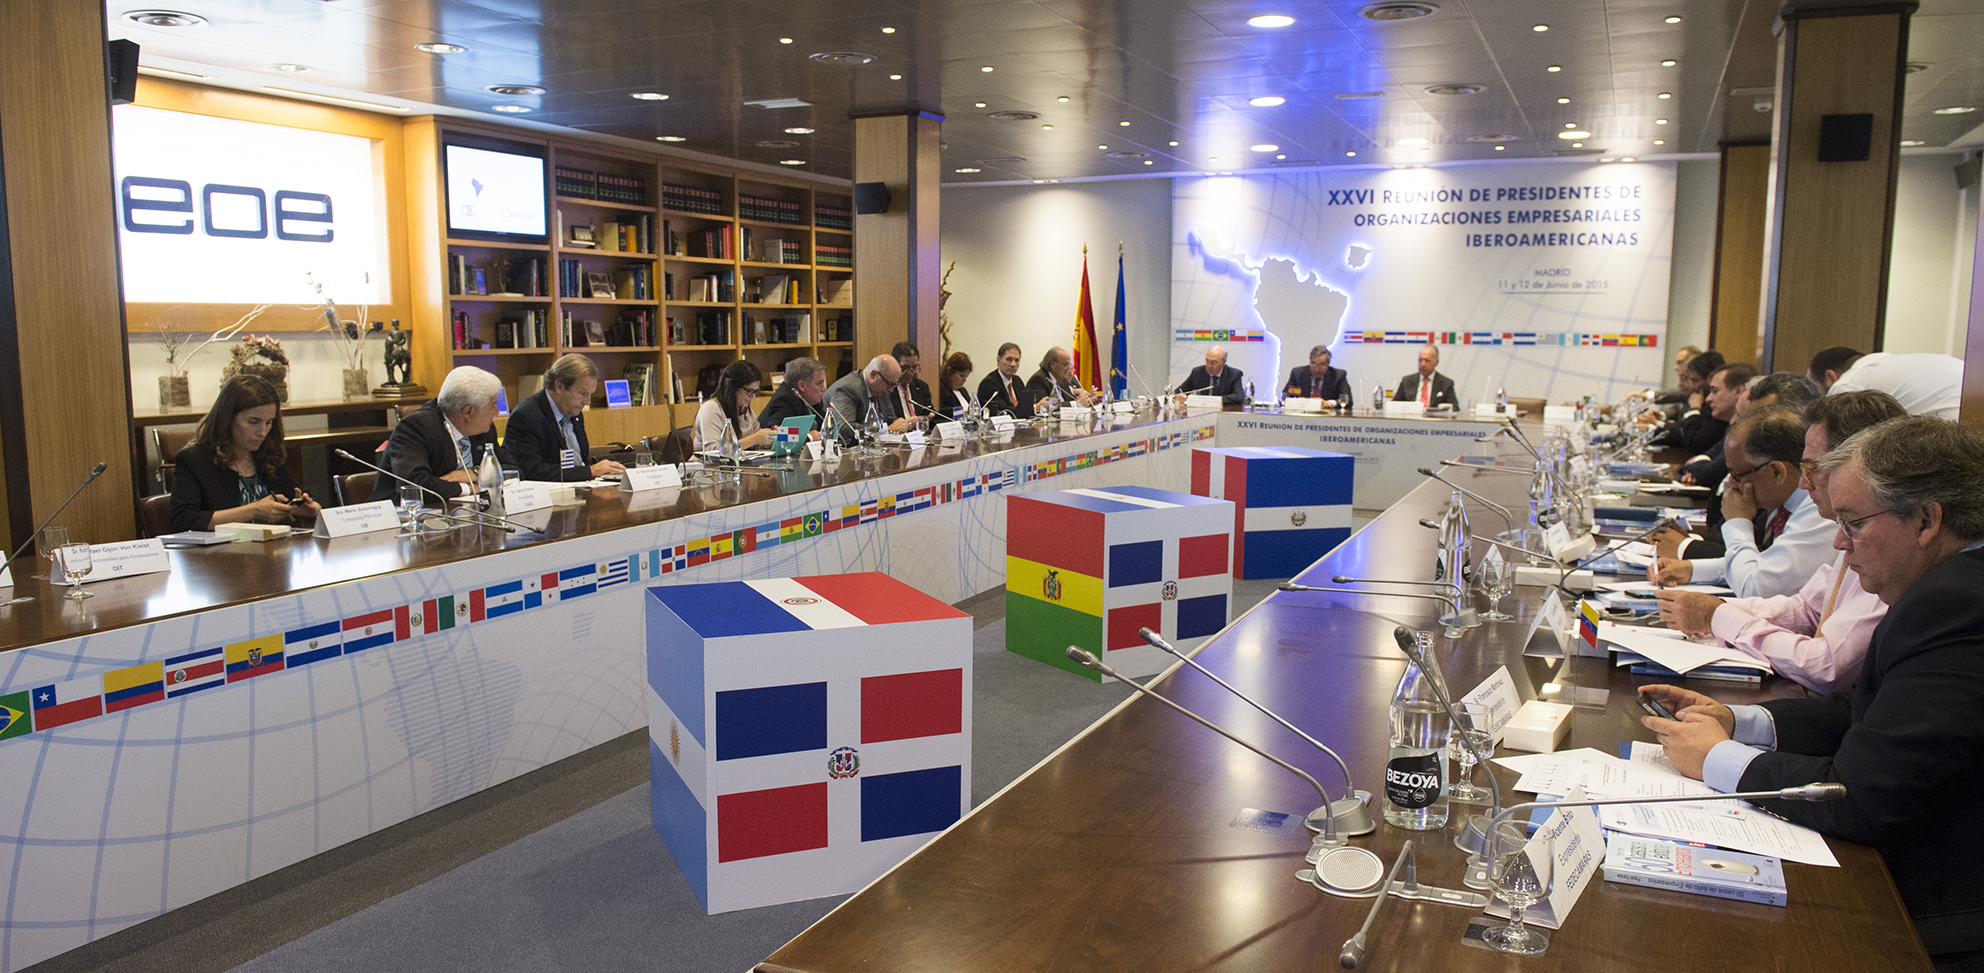 XXVI Reunión de Presidentes de Organizaciones Empresariales Iberoamericanas